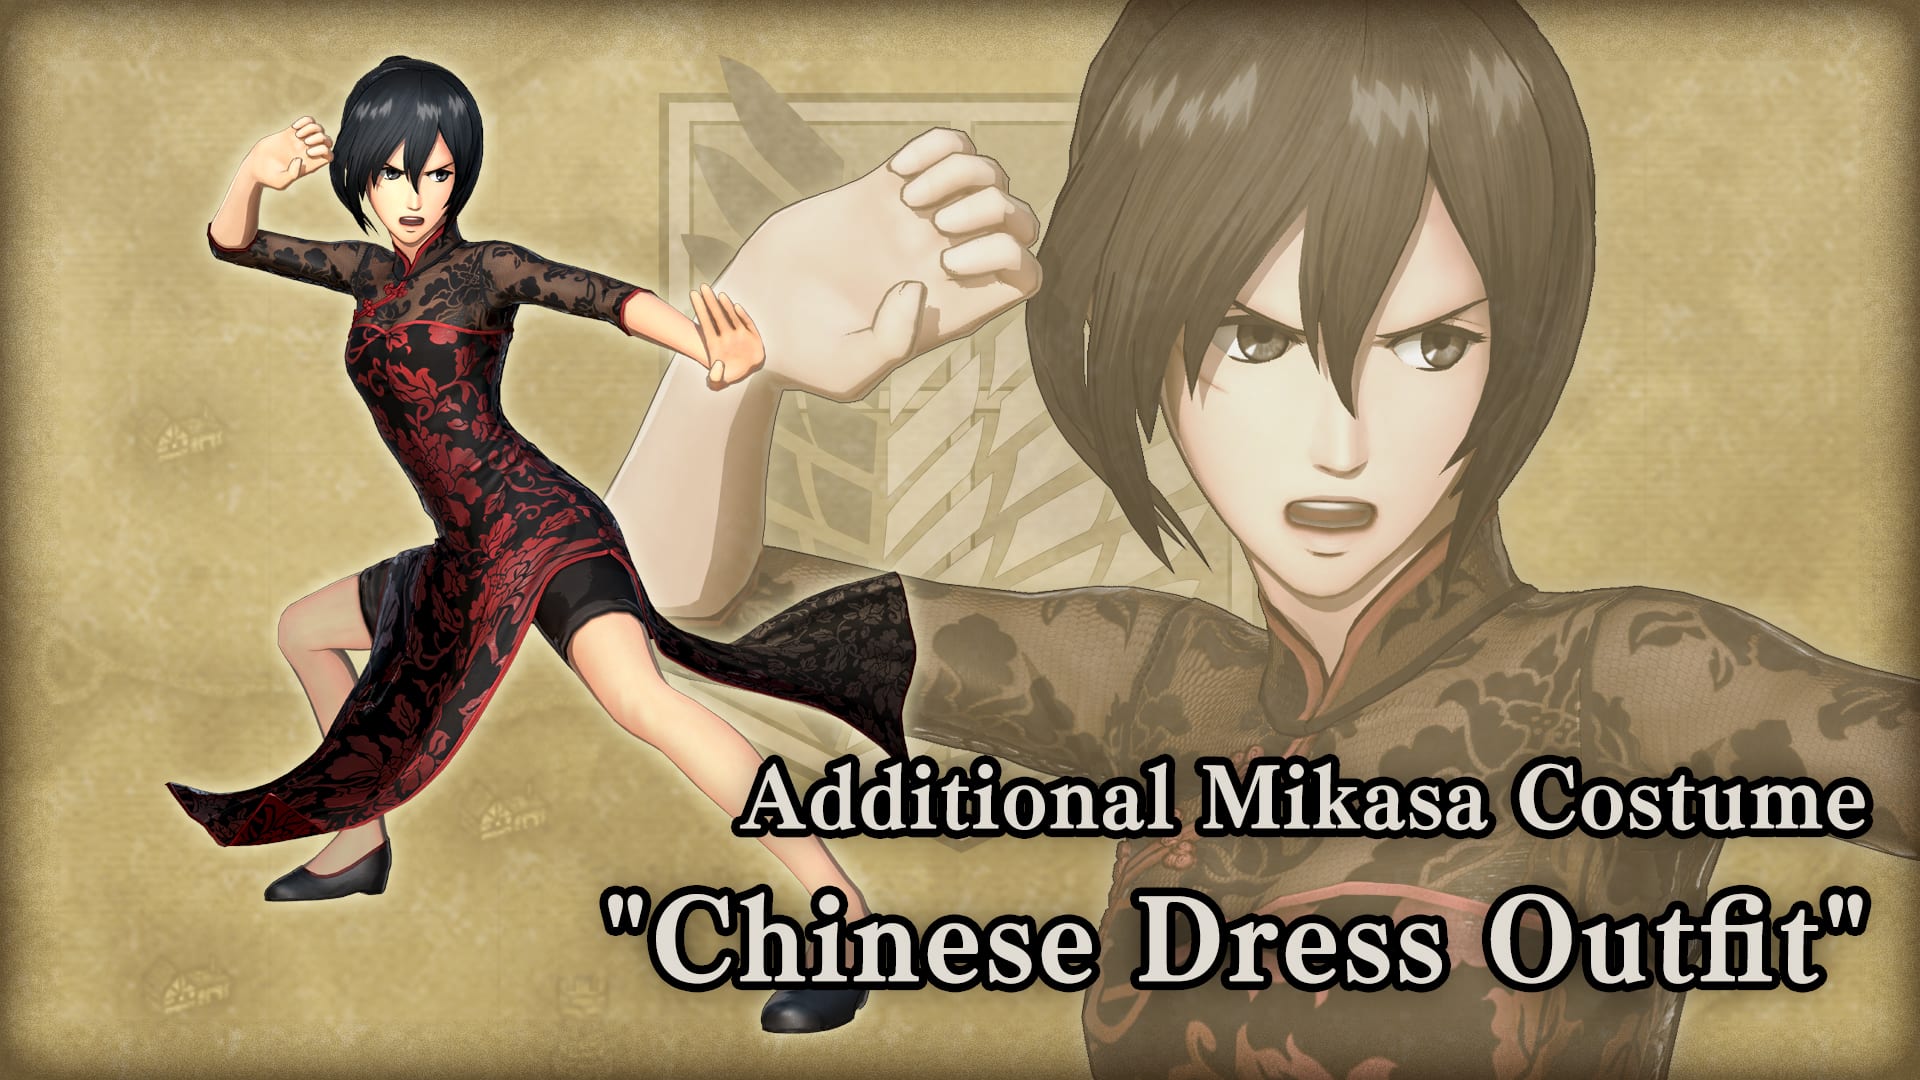 Roupa adicional para Mikasa, Chinese Dress